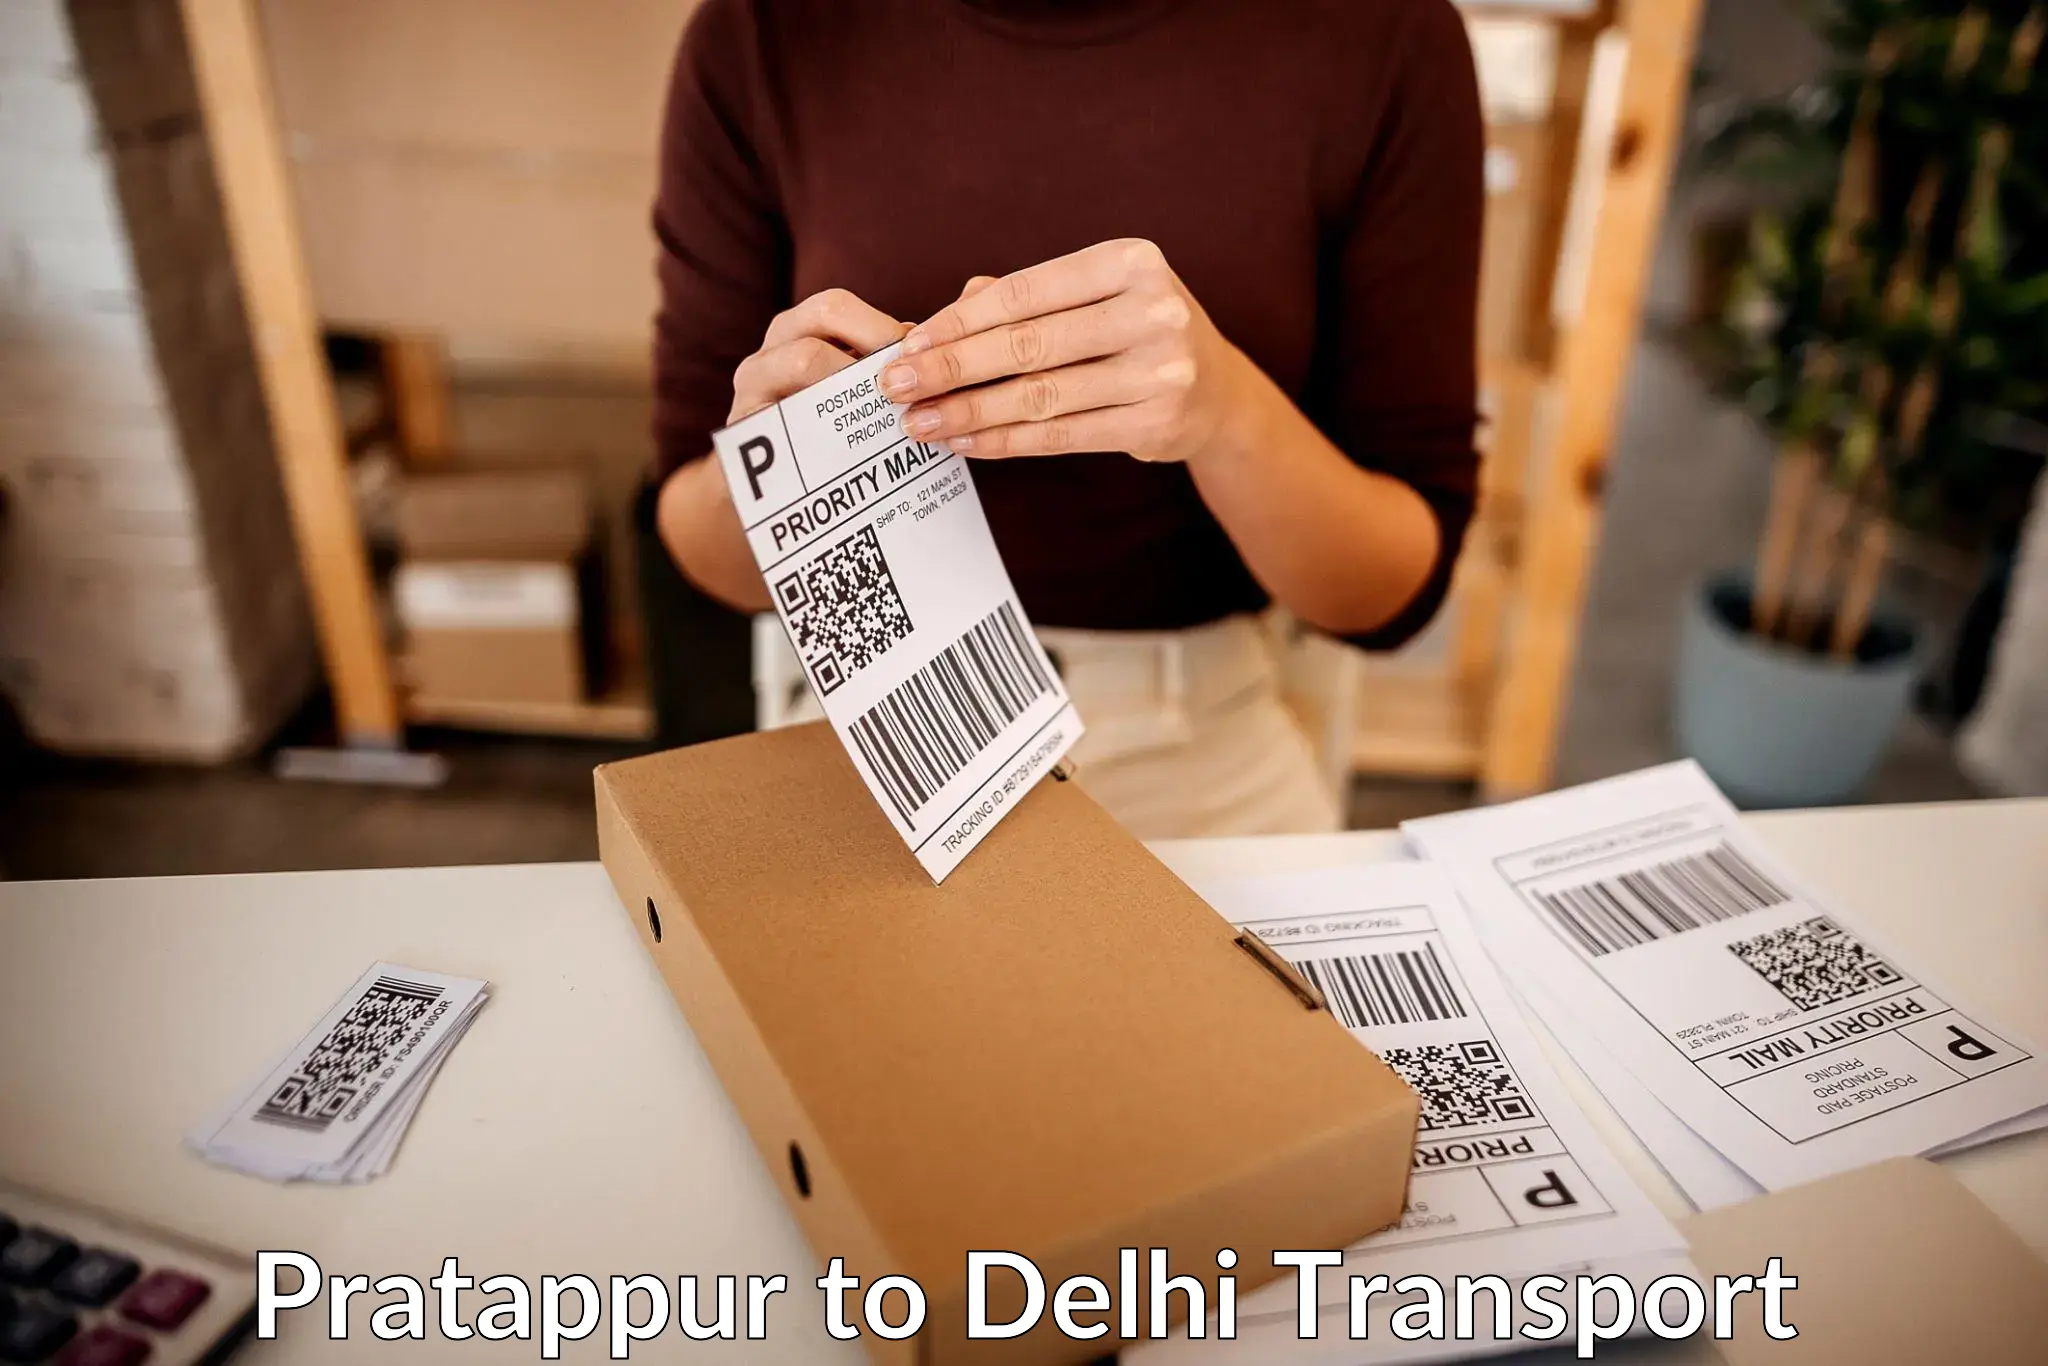 Parcel transport services Pratappur to Delhi